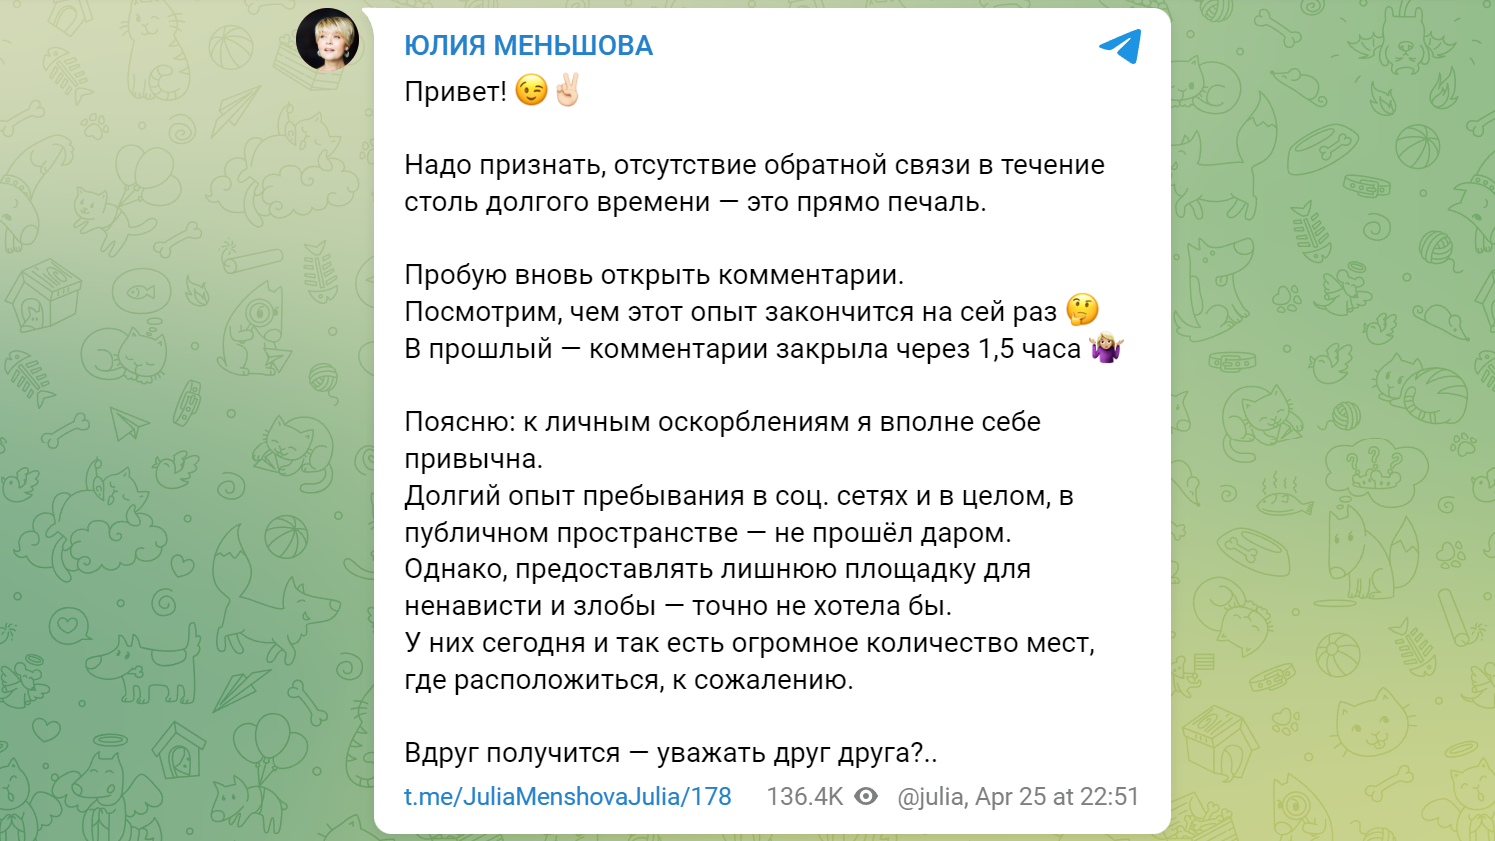 Юлия Меньшова заявила, что не потерпит на своей странице в соцсети склок и злобы - image 1